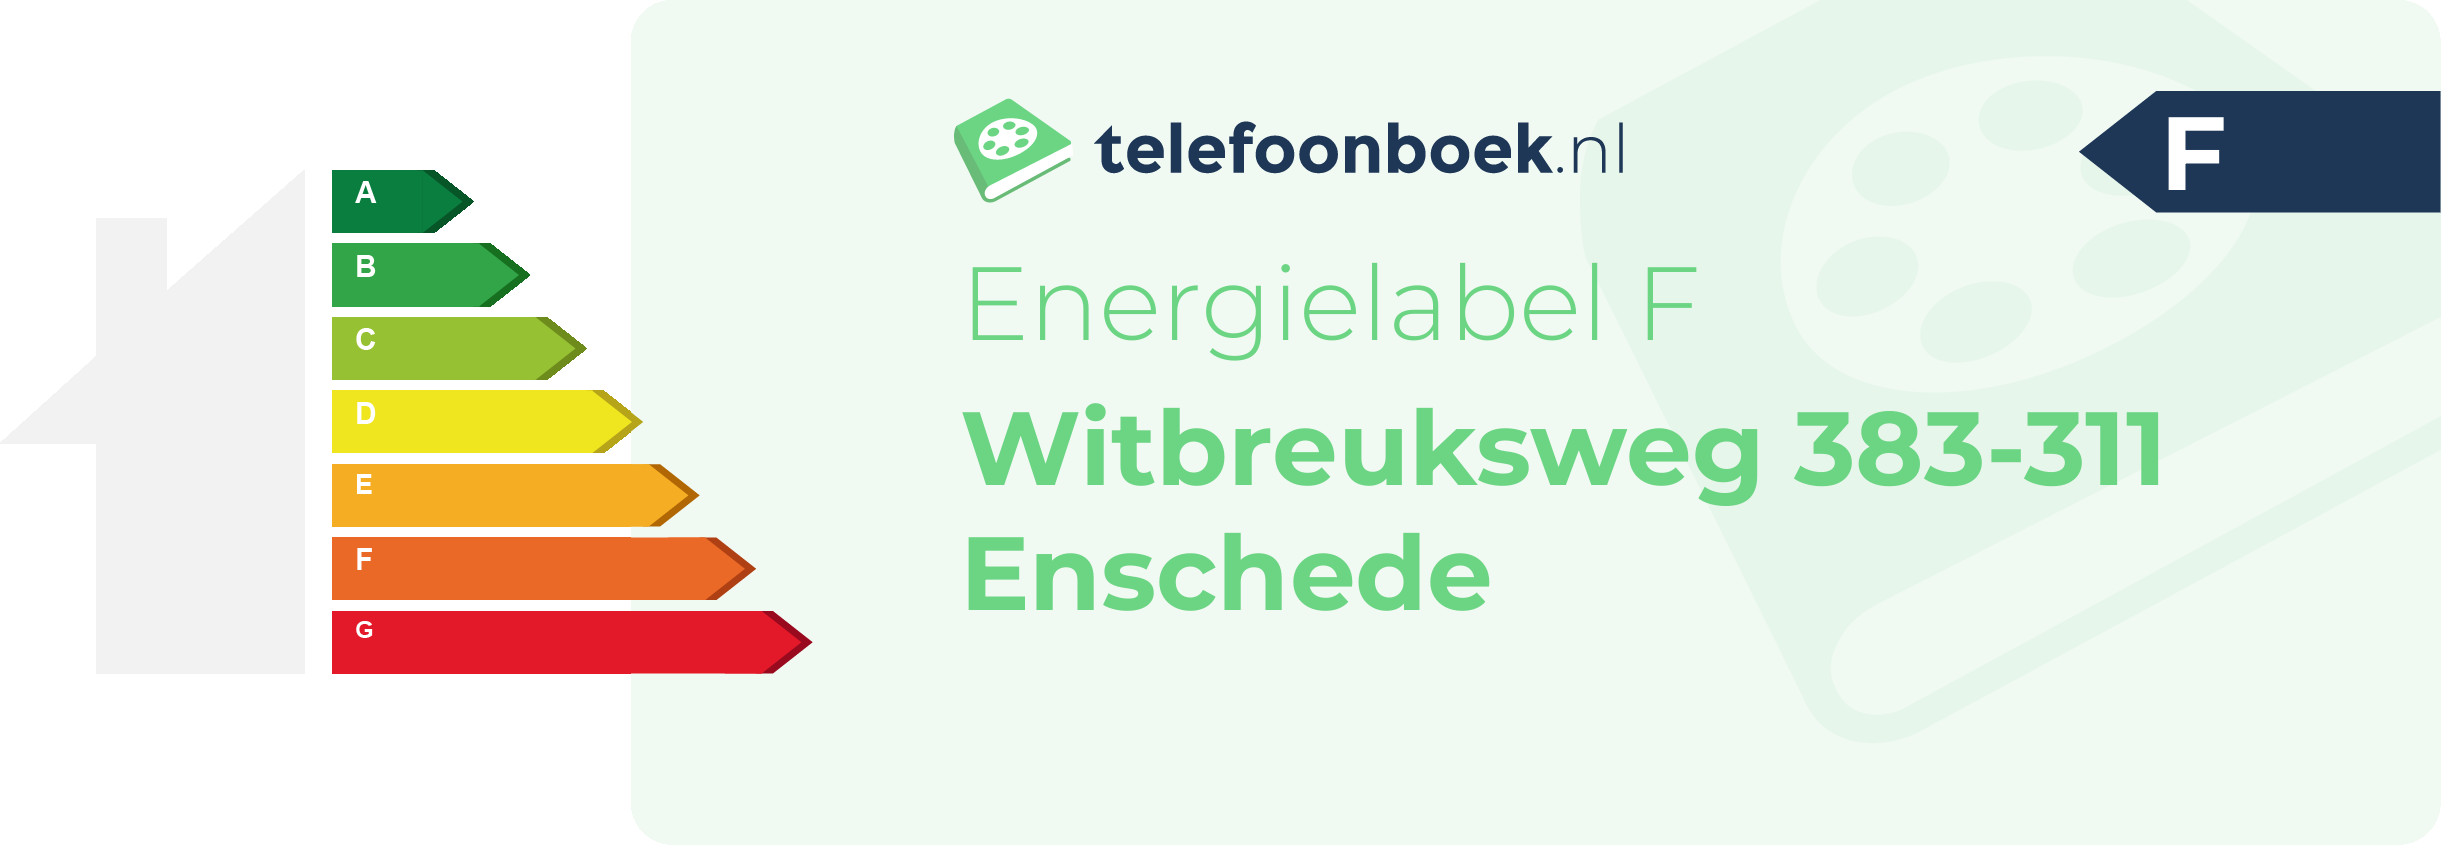 Energielabel Witbreuksweg 383-311 Enschede